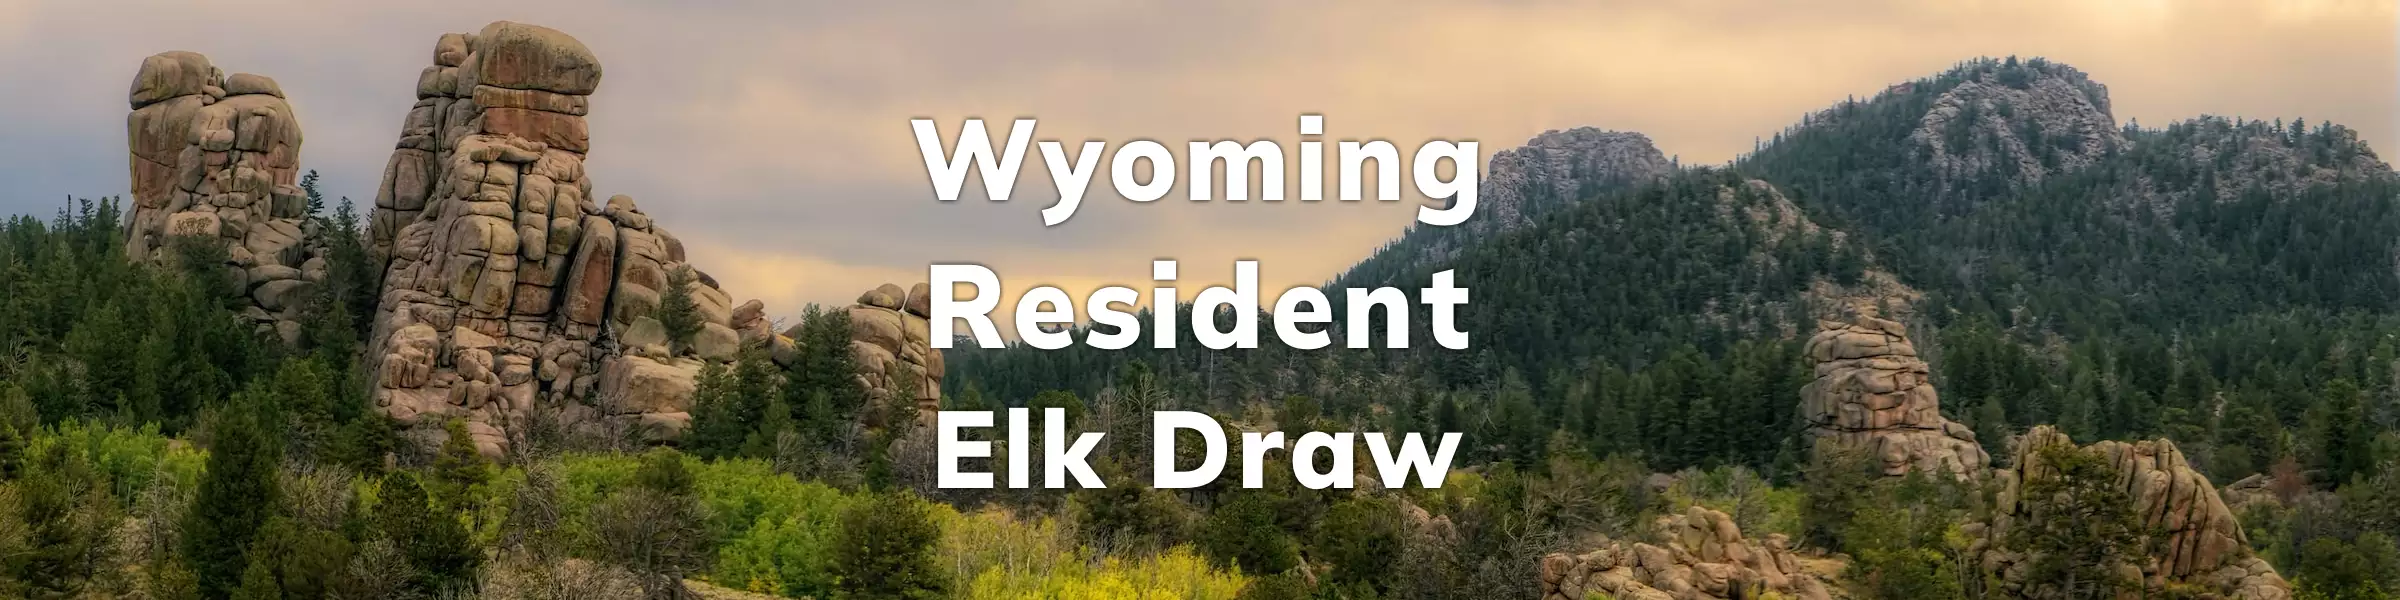 Wyoming Resident Elk Draw